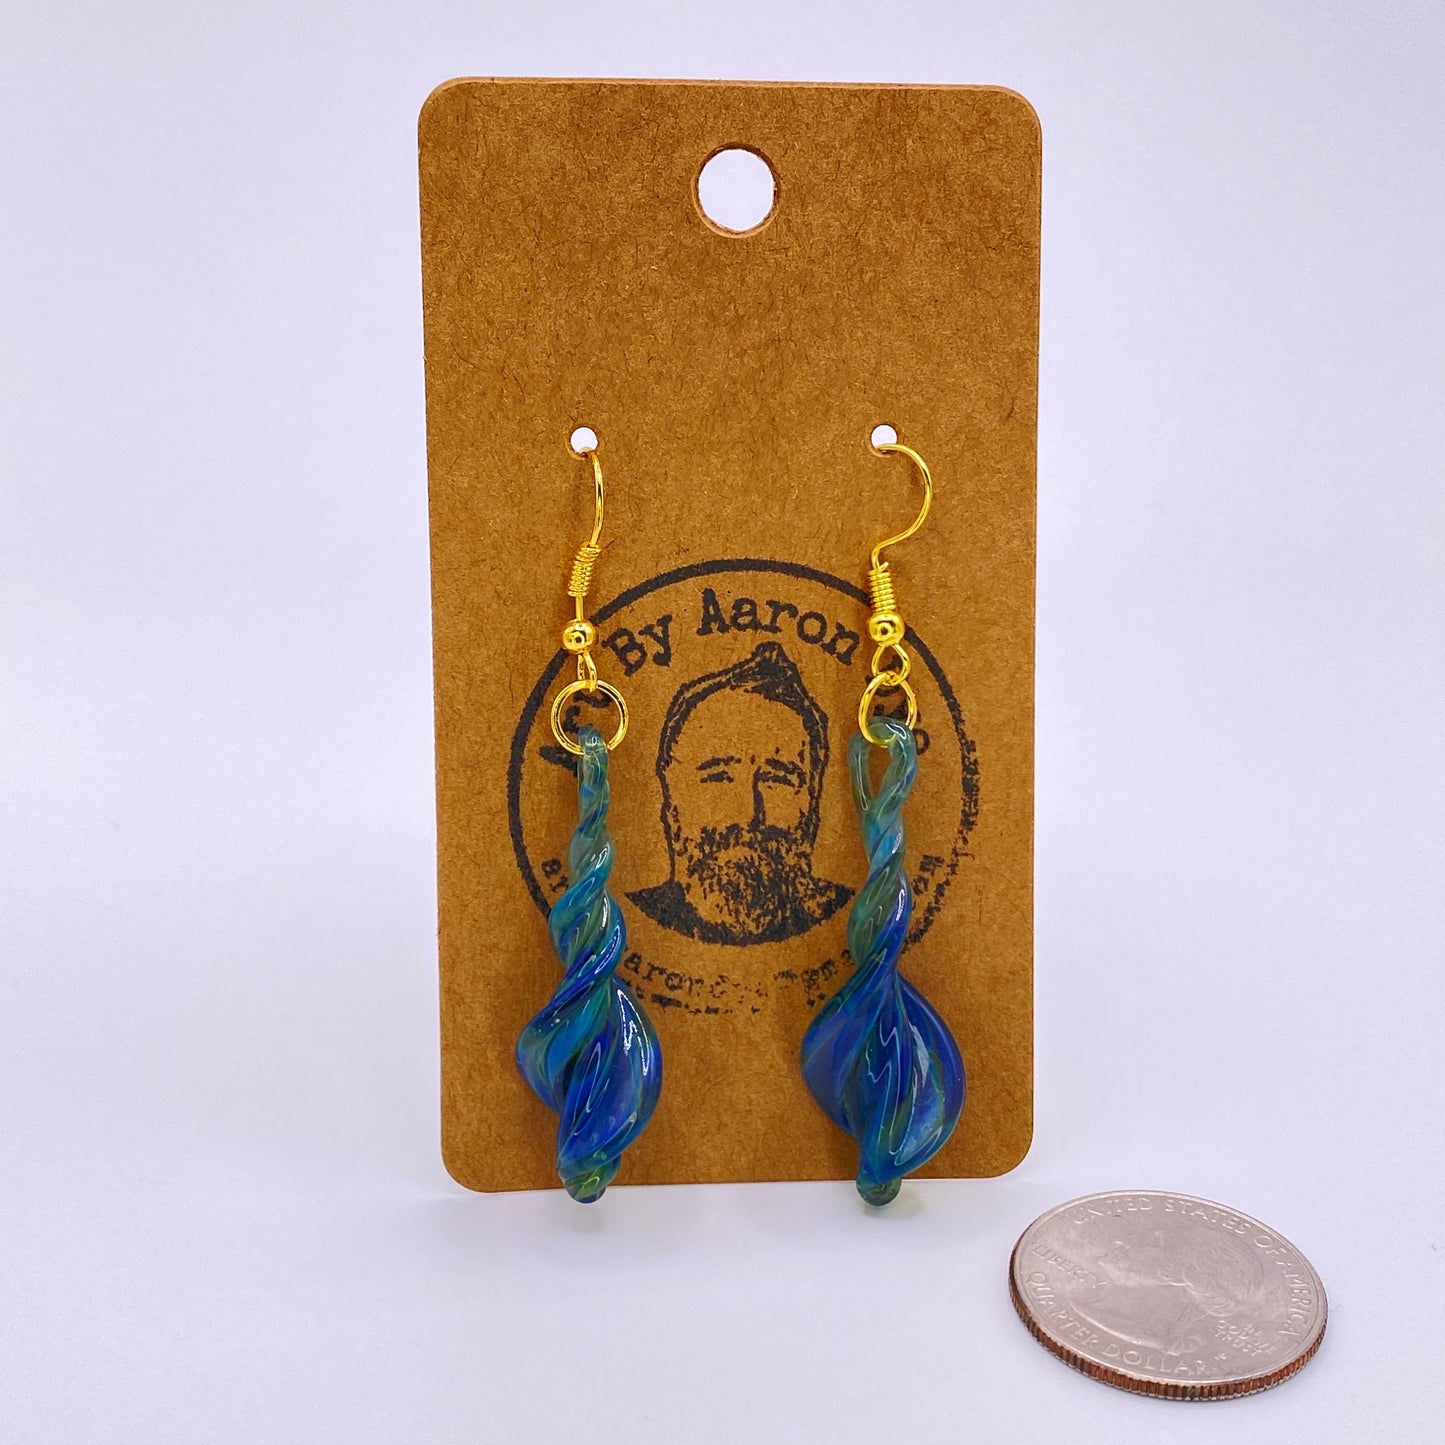 Blue Dichroic Blown Glass Earrings - Handmade Jewelry - Hypoallergenic | Art By Aaron Dye